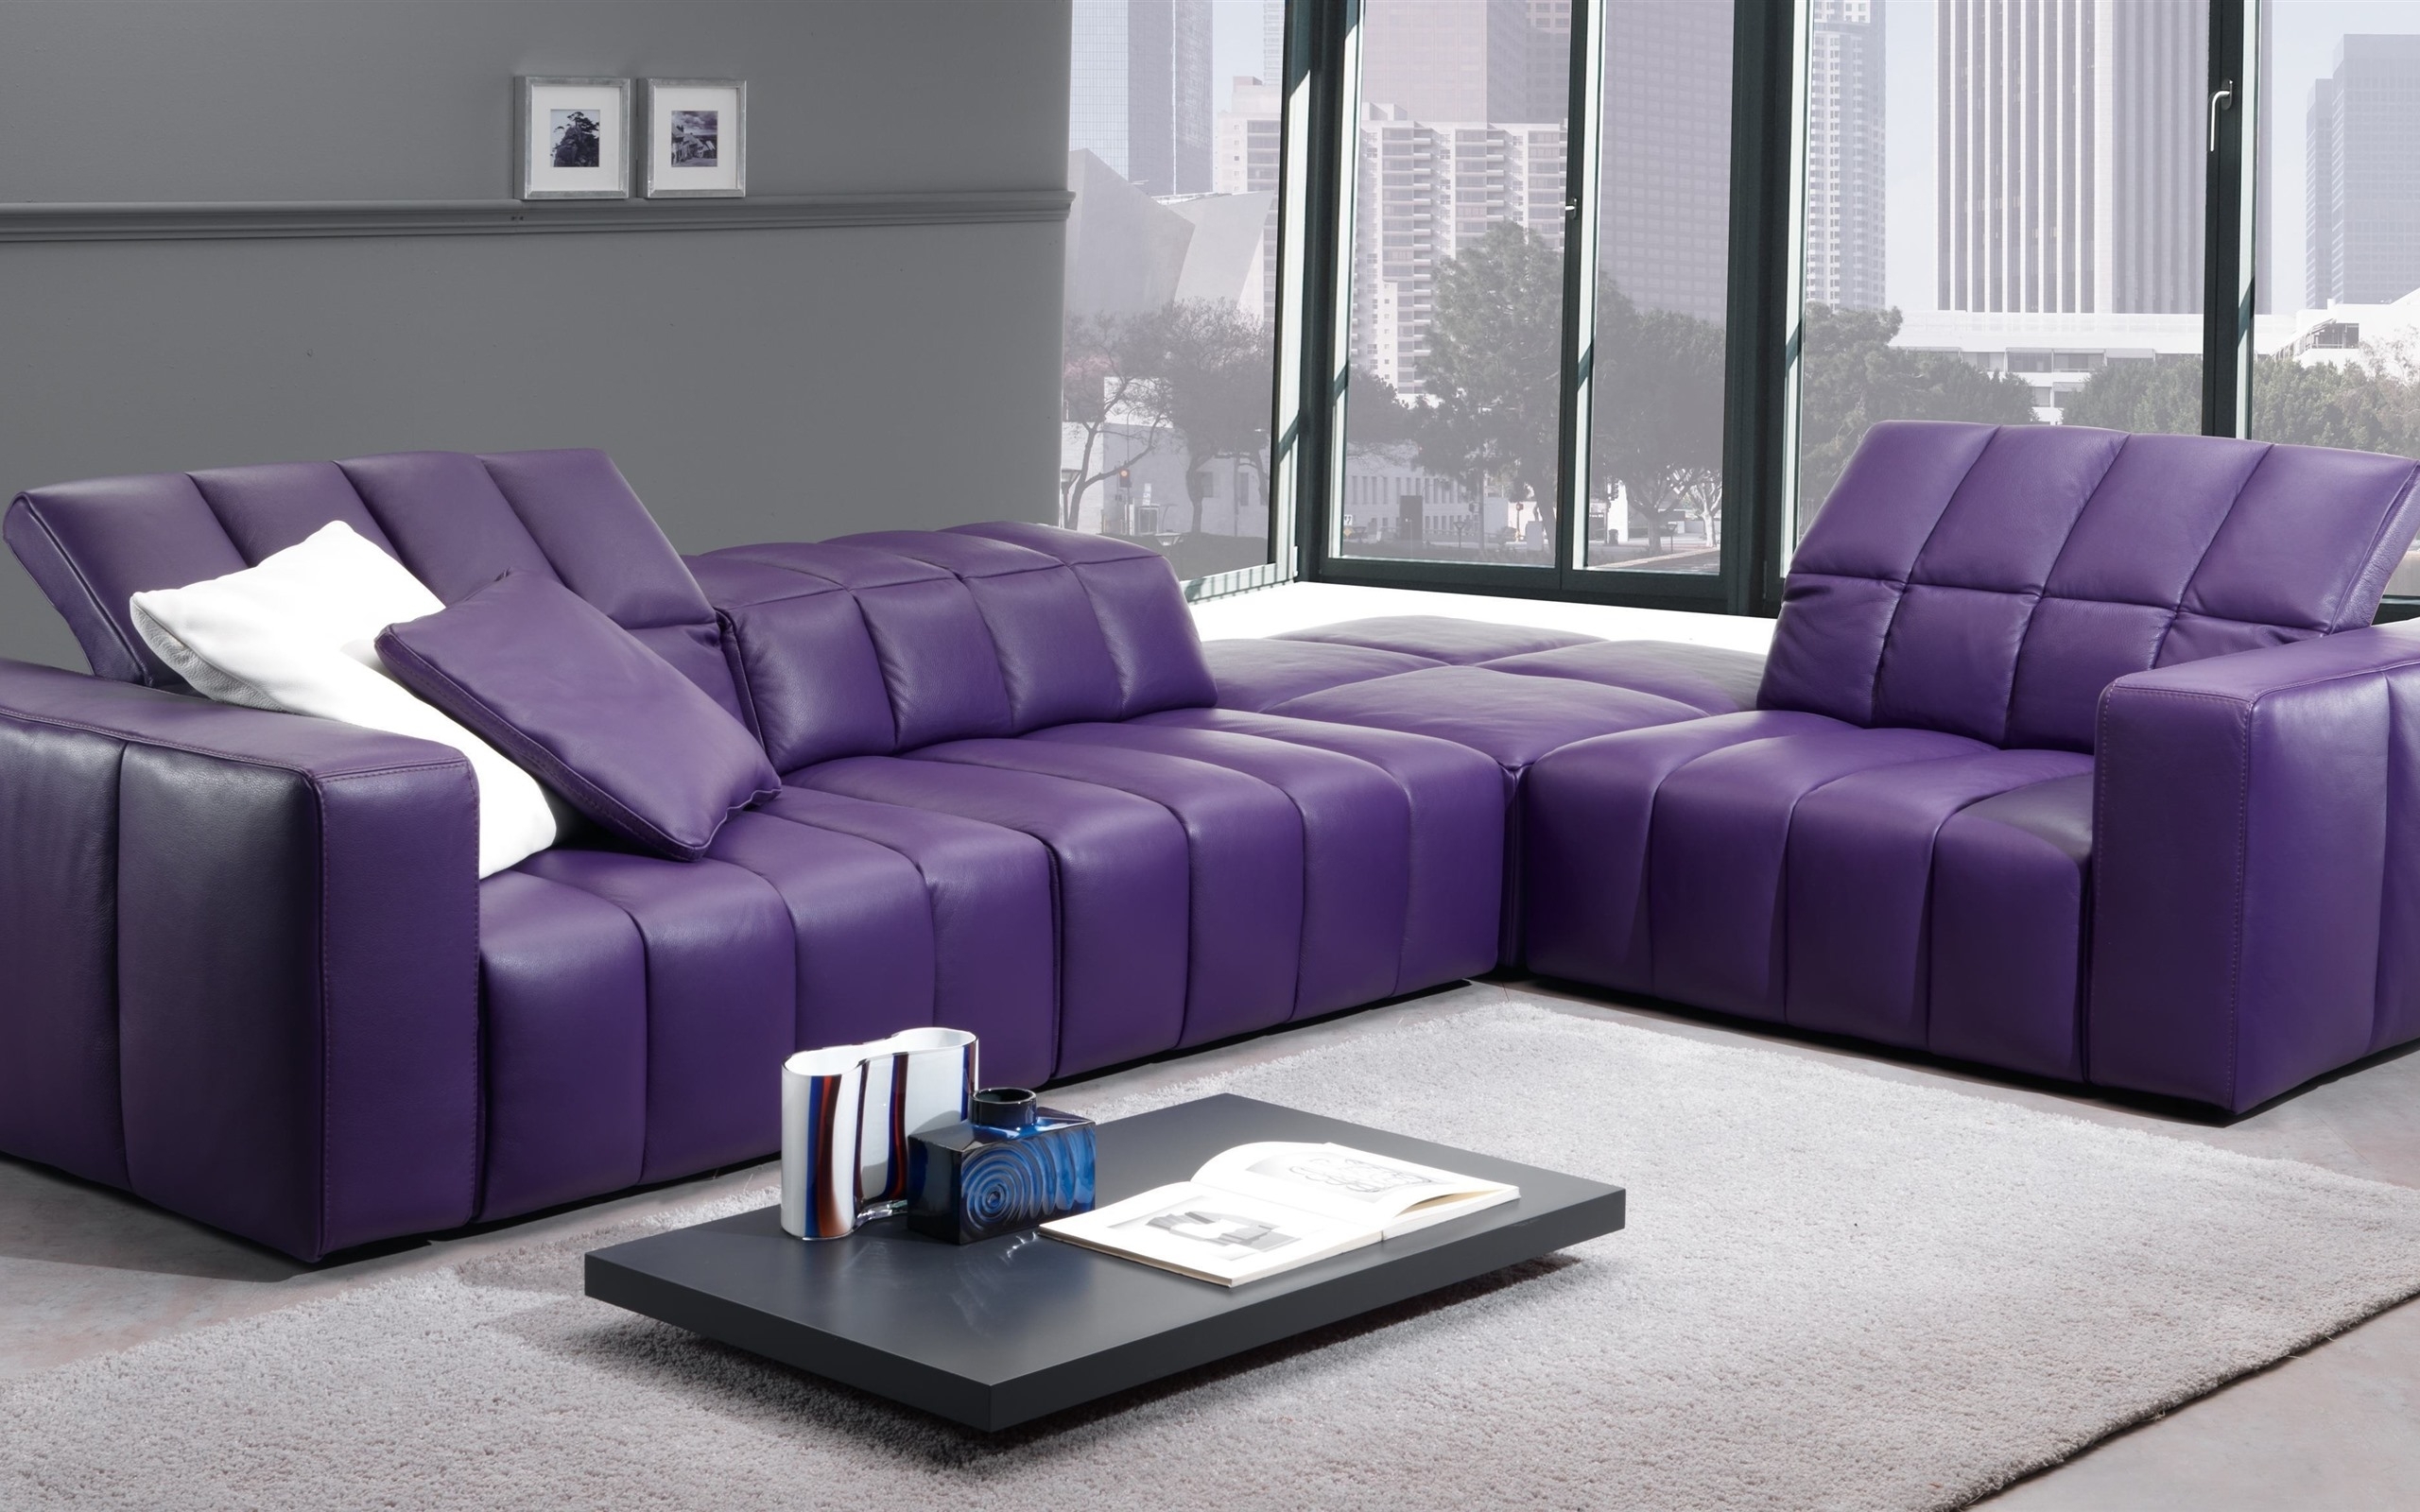 Purple Living Room Furniture Ideas On Foter